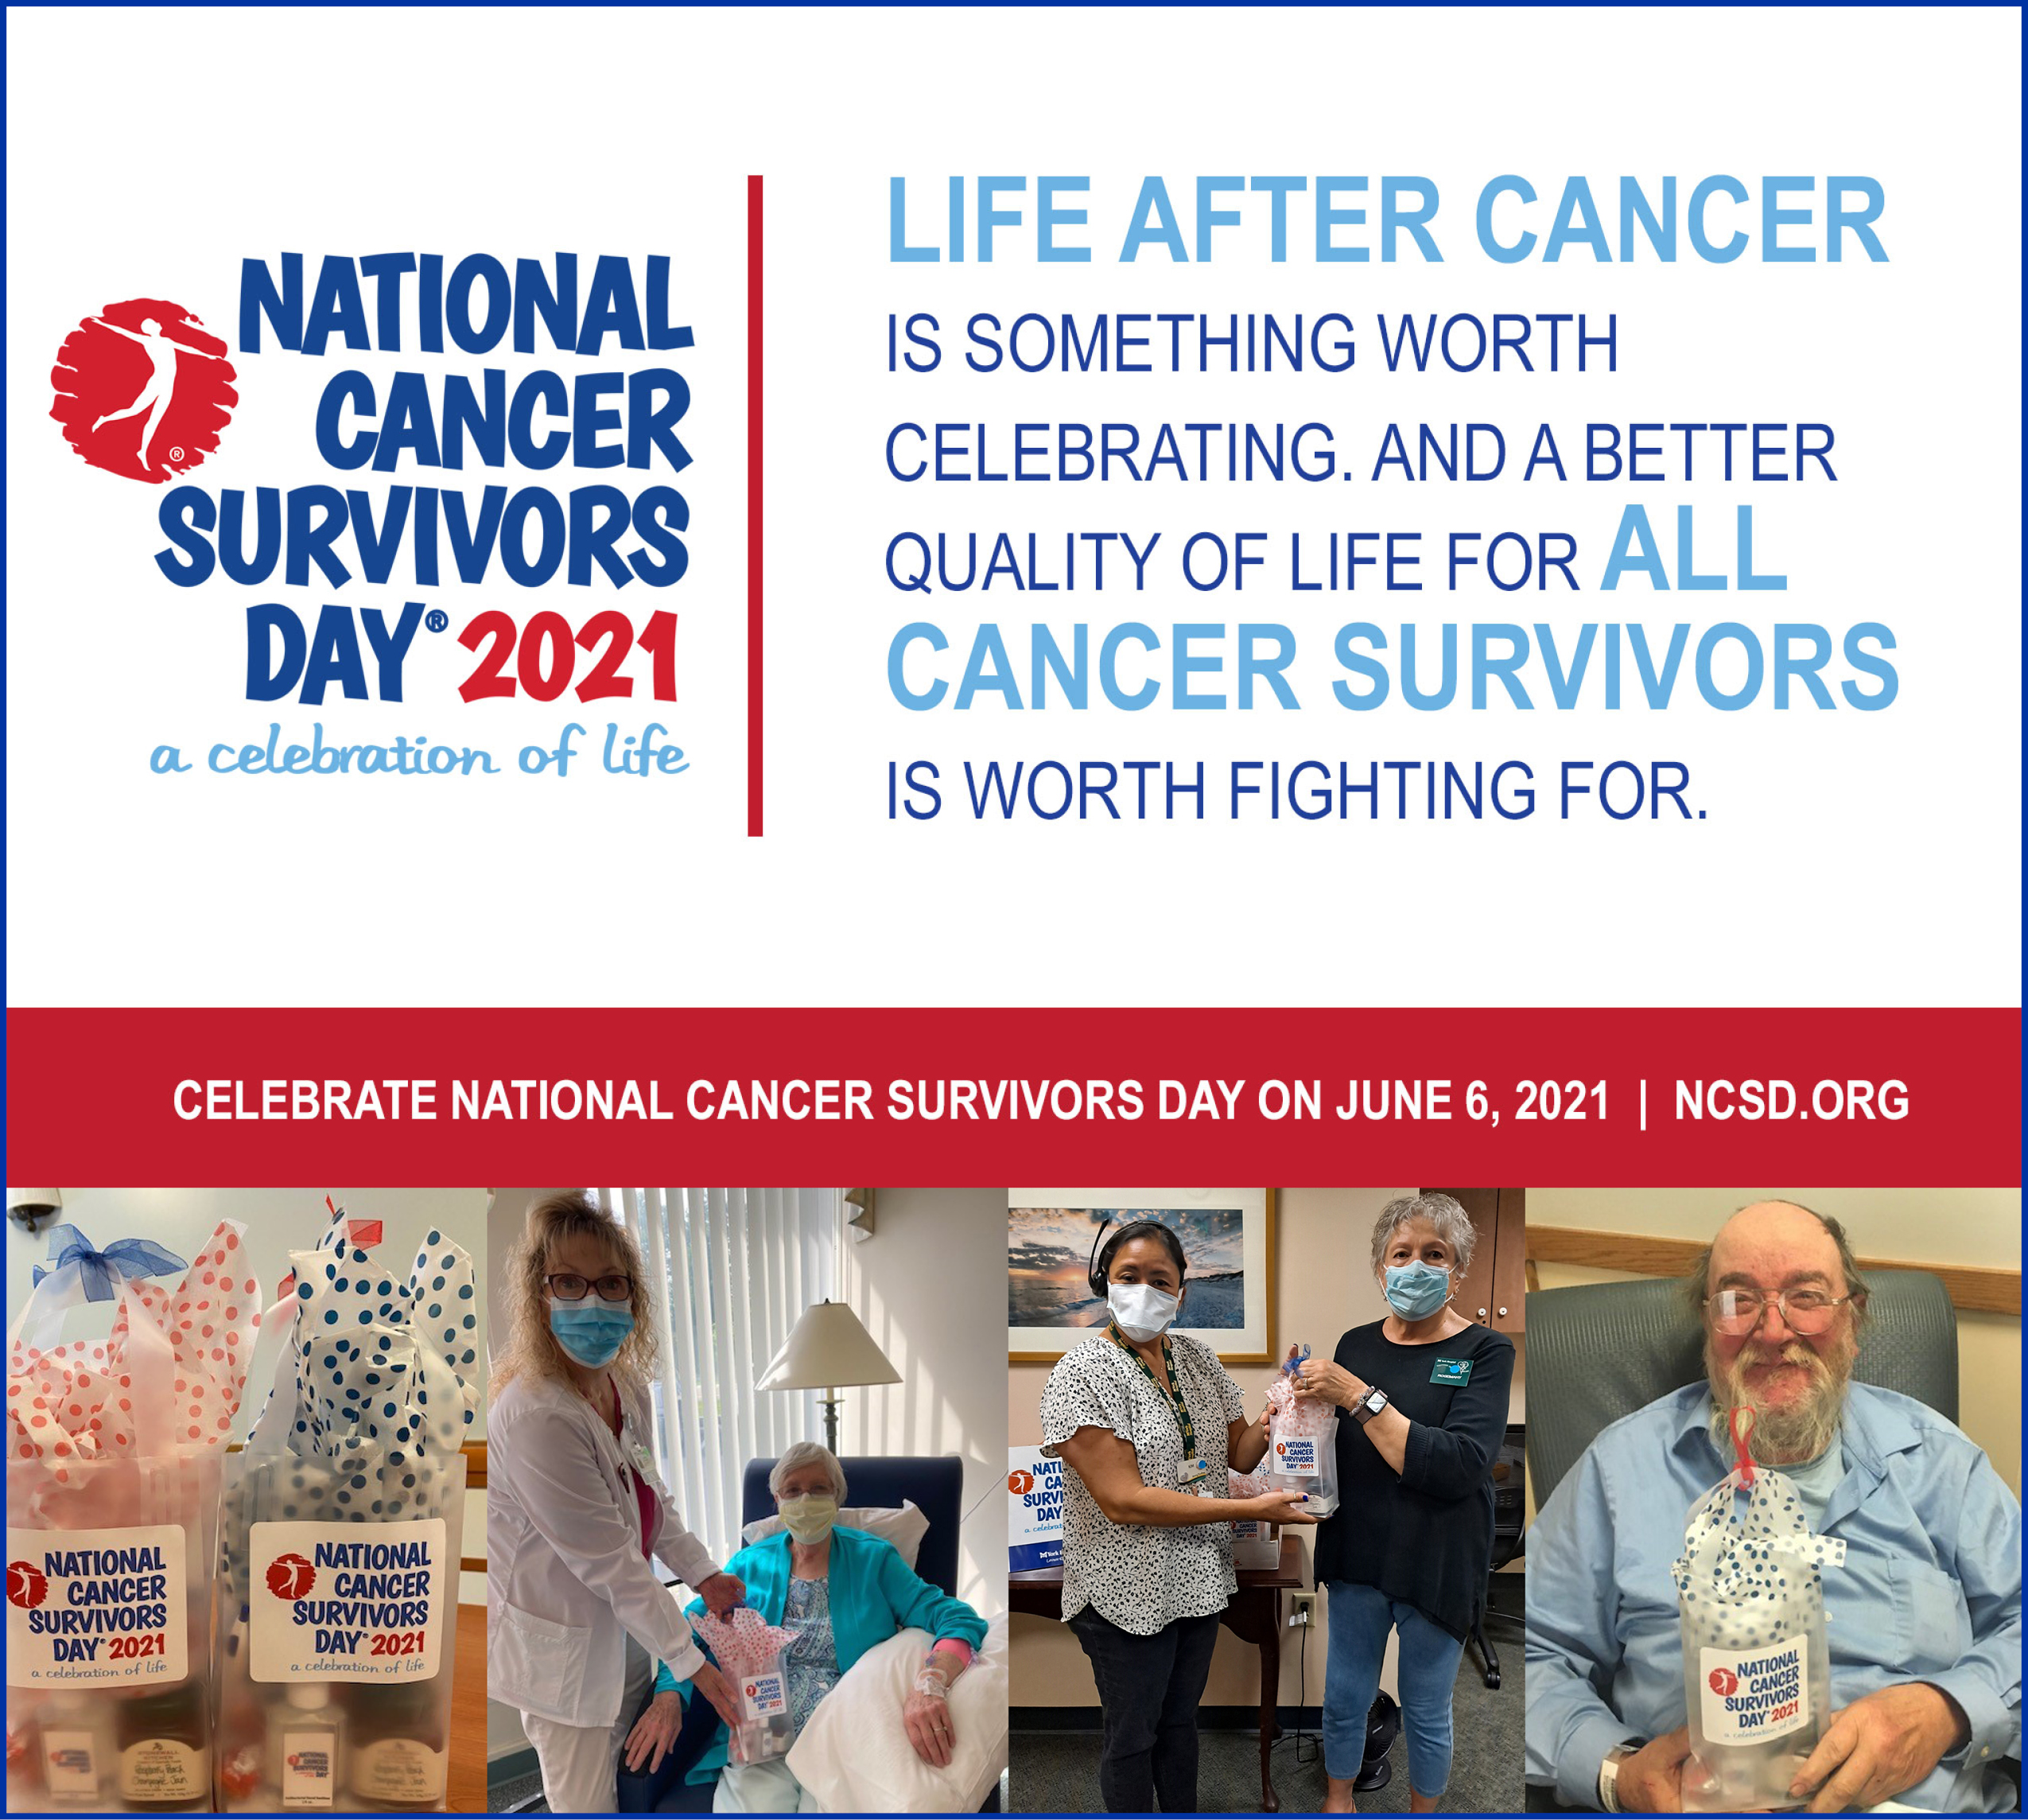 Celebrate National Cancer Survivors Day on June 6 - York Hospital